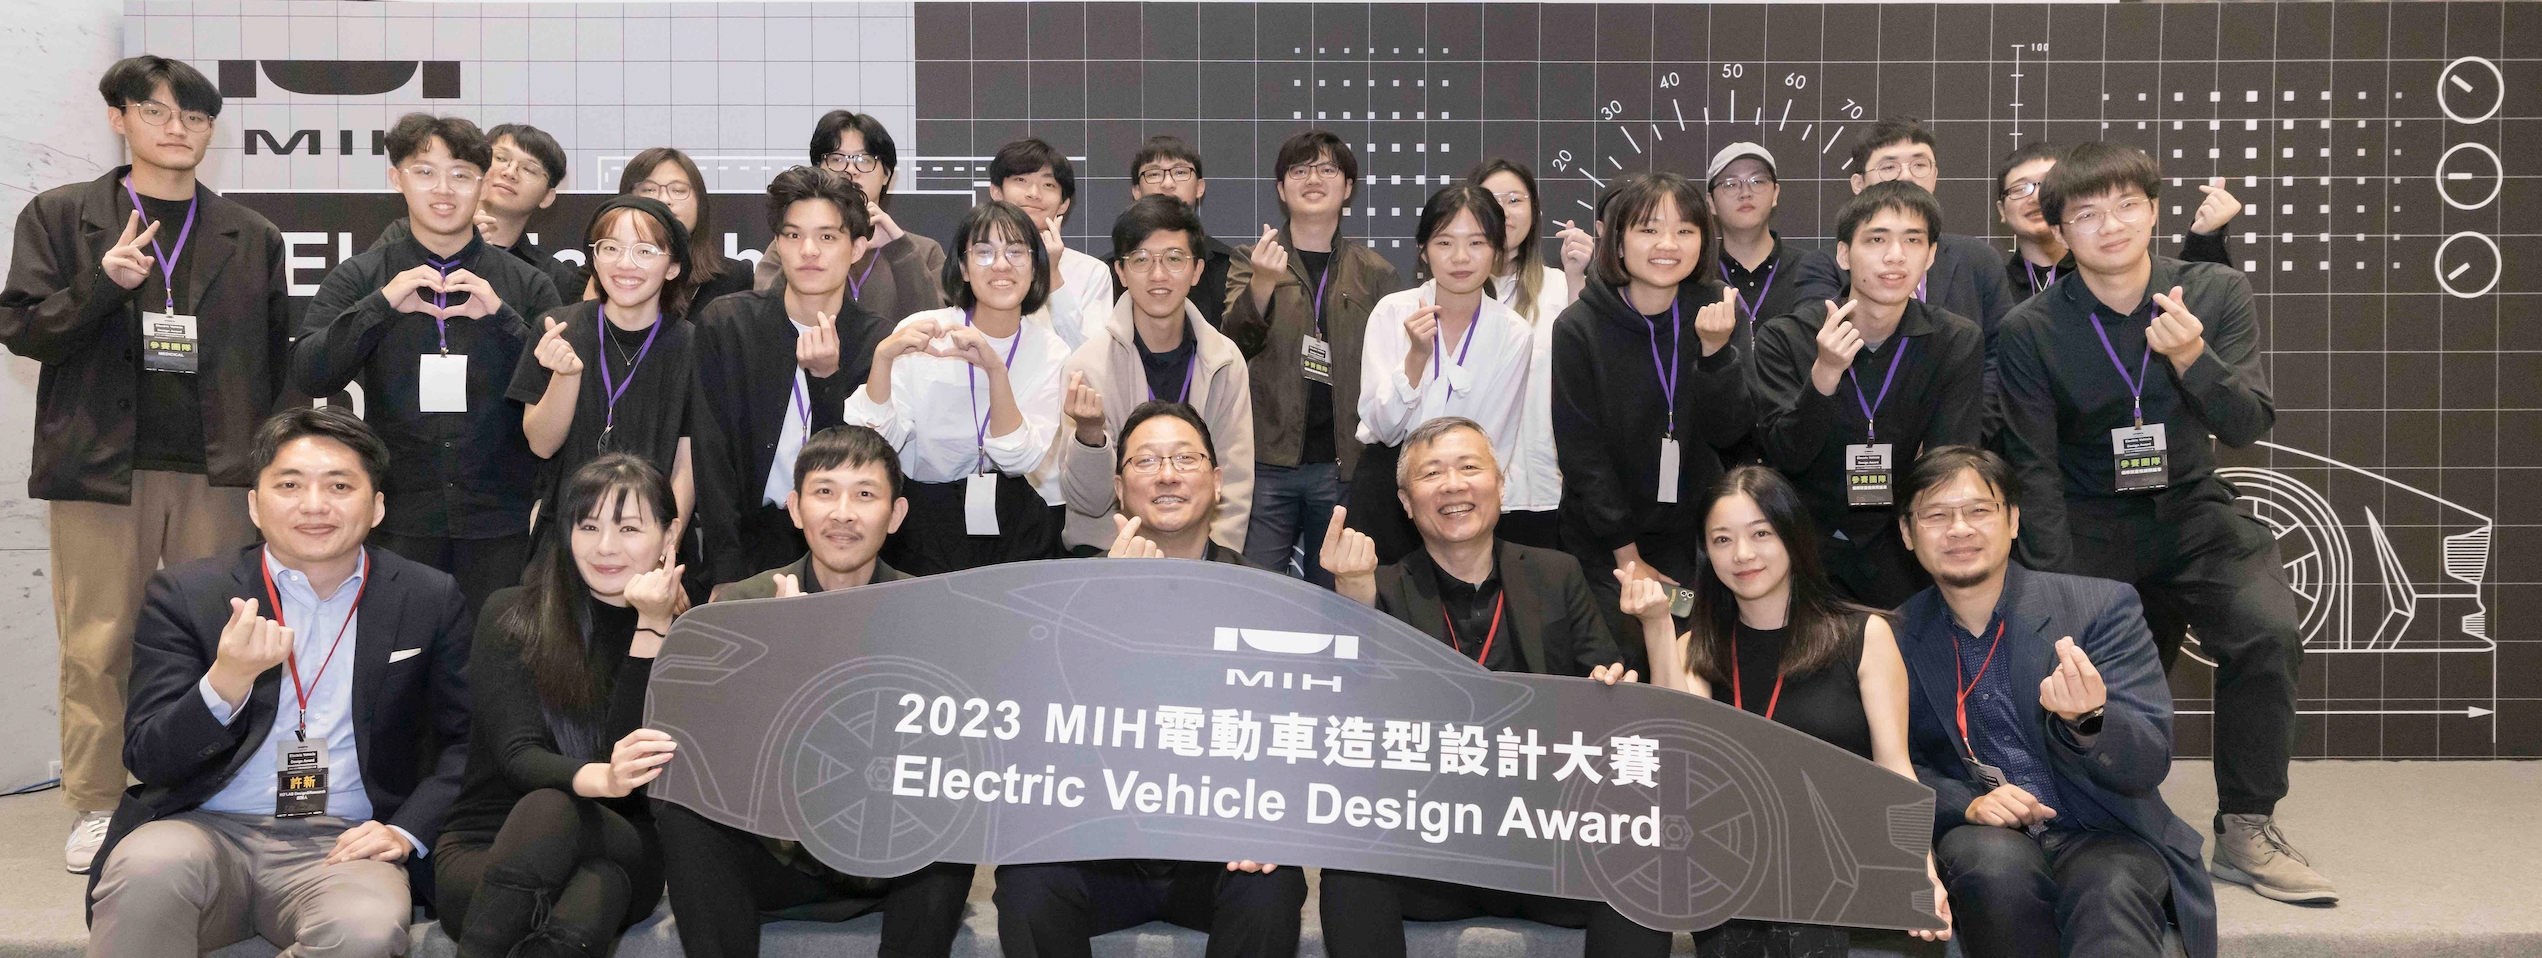 MIH電動車設計大賽決賽勝選揭曉  Z世代創新定義未來智慧城市！